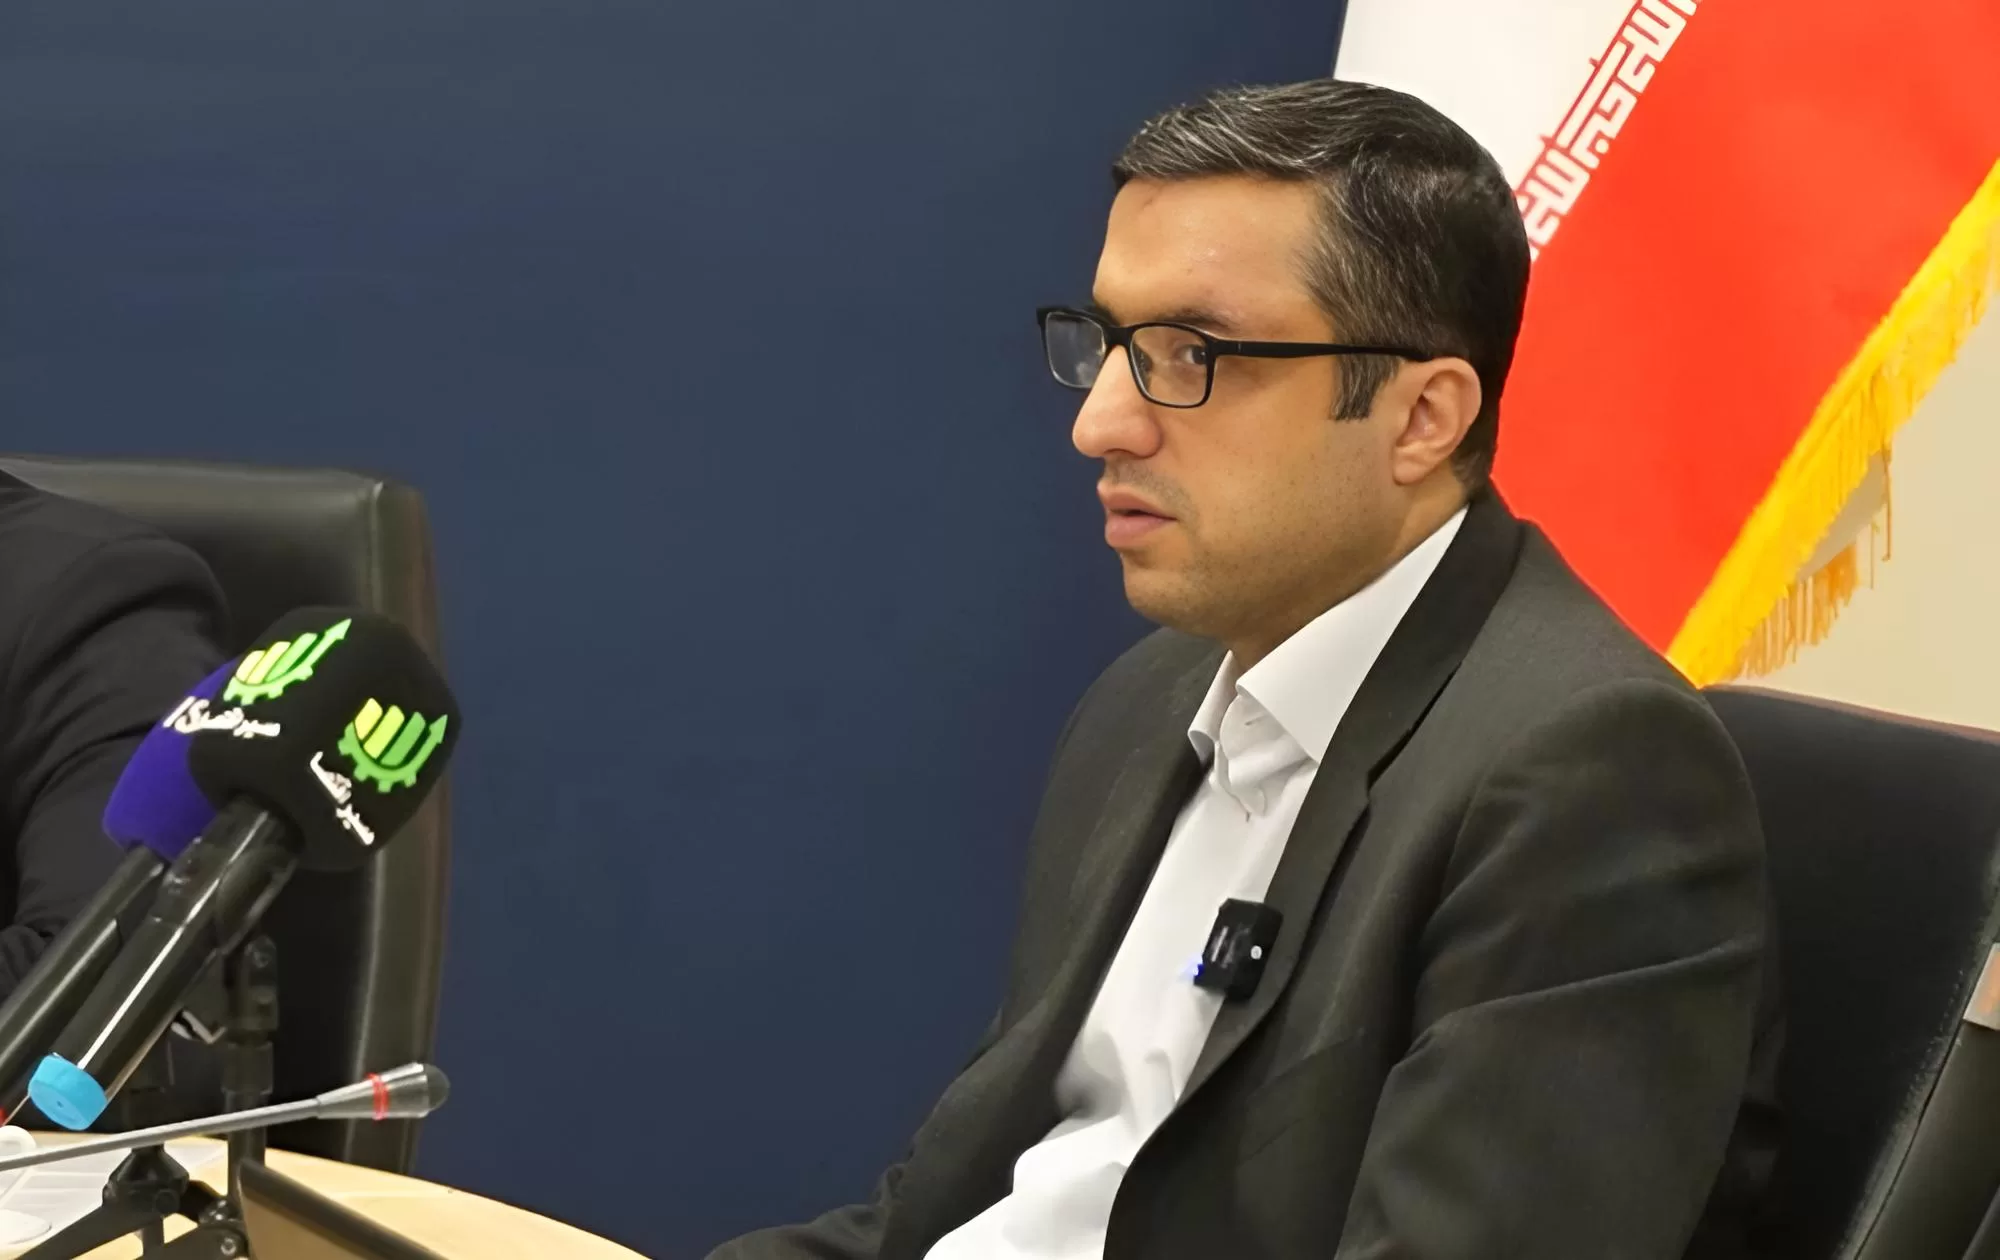 حسین درودیان - نشست خبری بسته سیاستی مسیر دولت چهاردهم